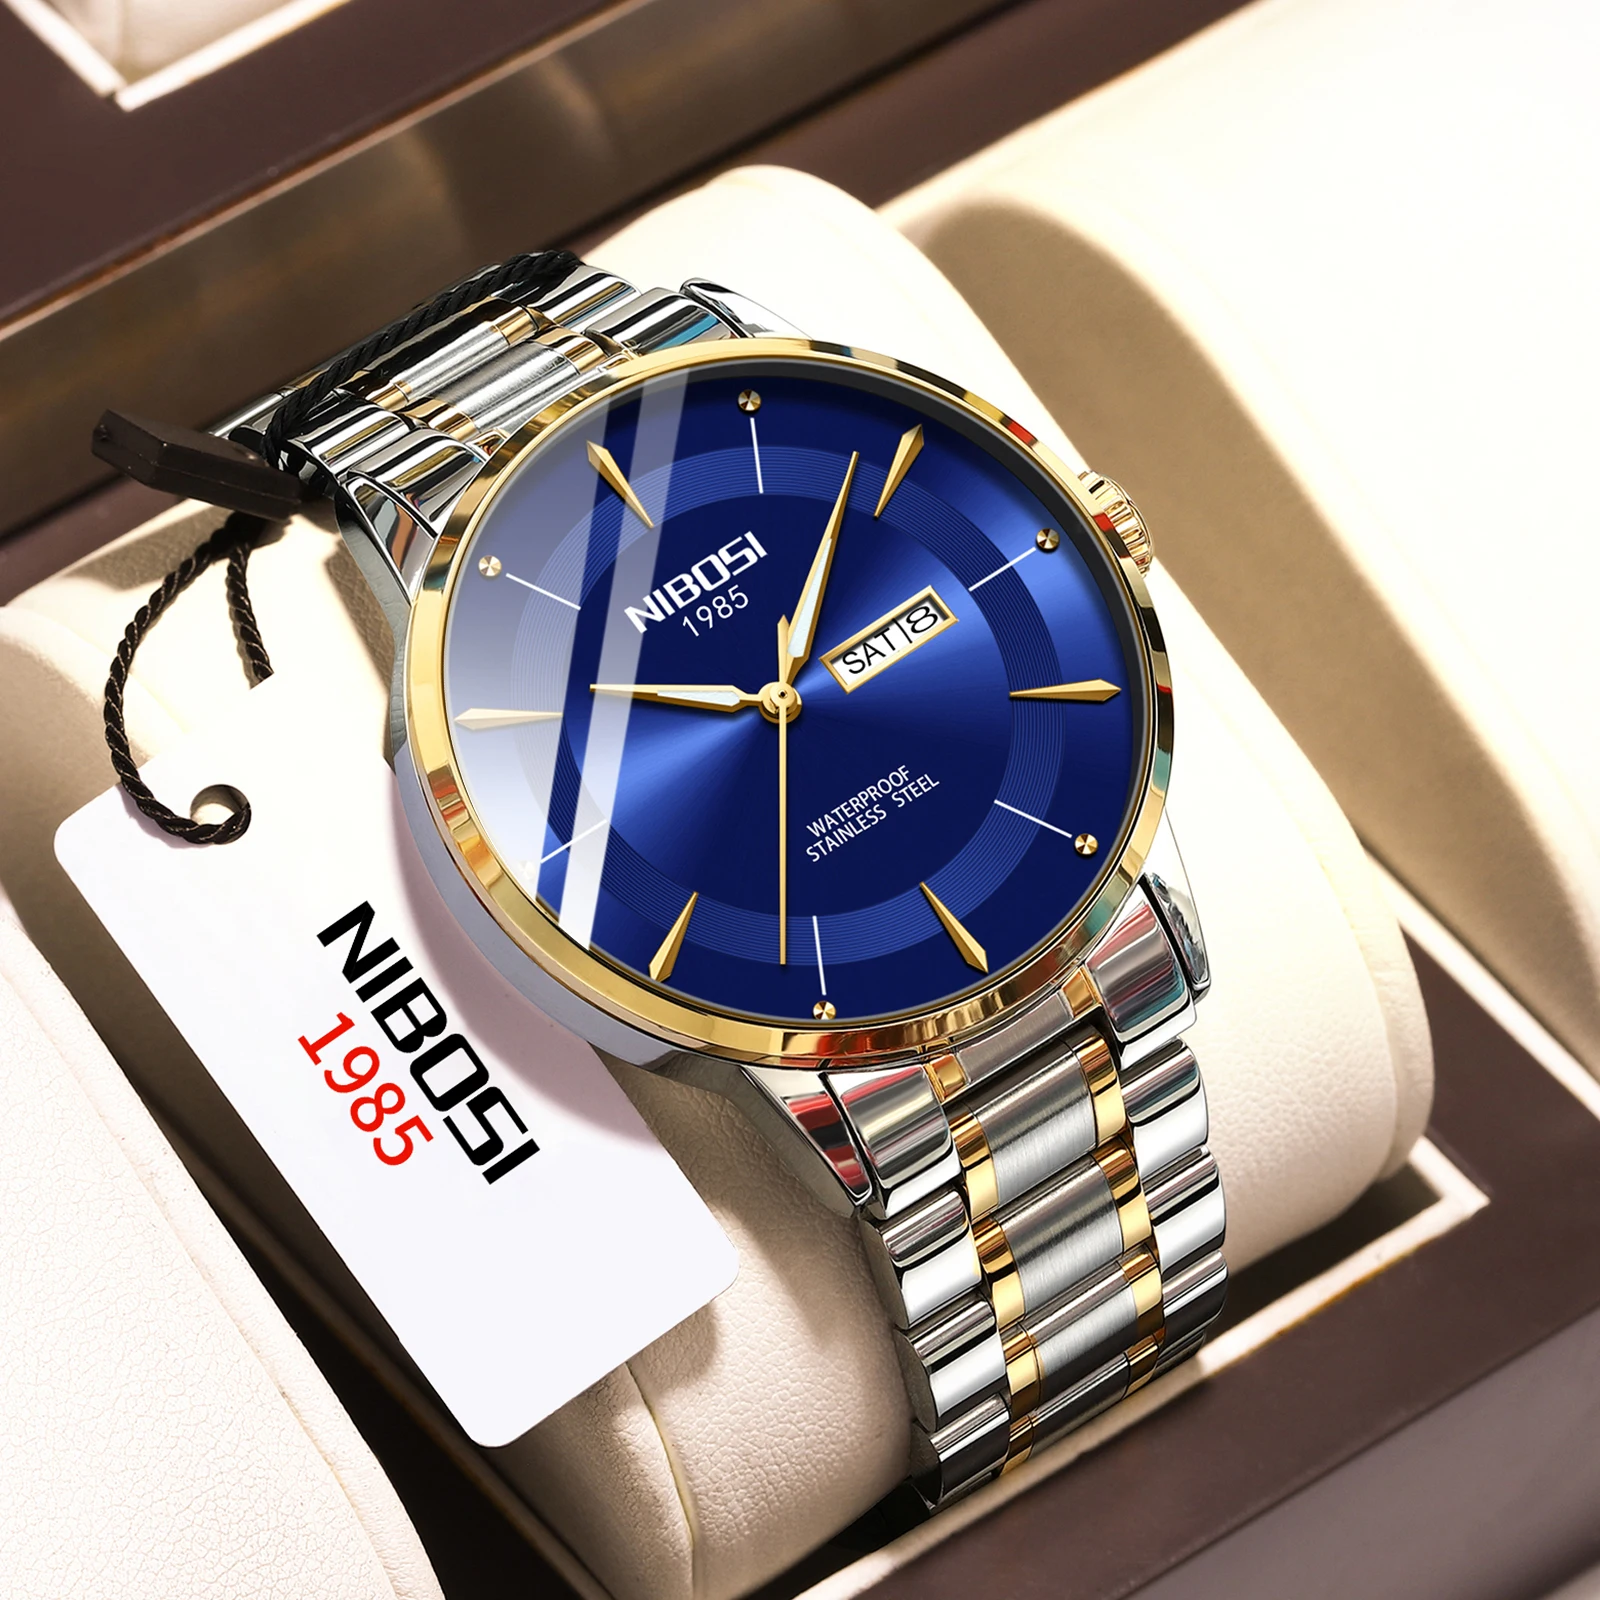 NIBOSI de relógios Para Homens, tipo Superior de Quartzo relógio de Pulso Clássico Business Design Simples Data de Semana de Exibição do sexo Masculino Relógios Relógio Masculino